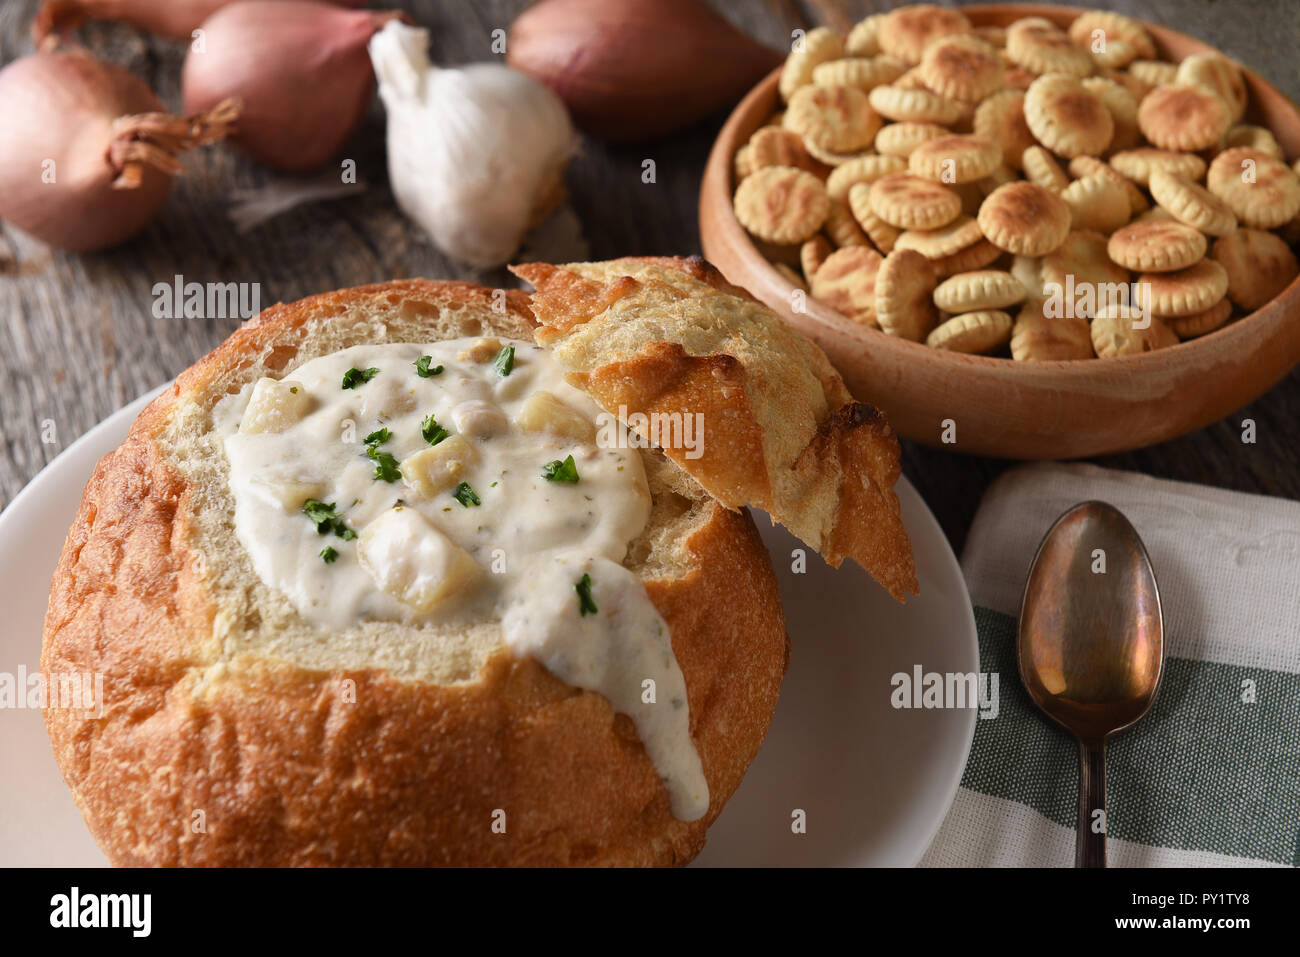 Primo piano della ciotola di pane del New England Clam Chowder. Una ciotola di oyster crackers, aglio e cipolle in background. Foto Stock